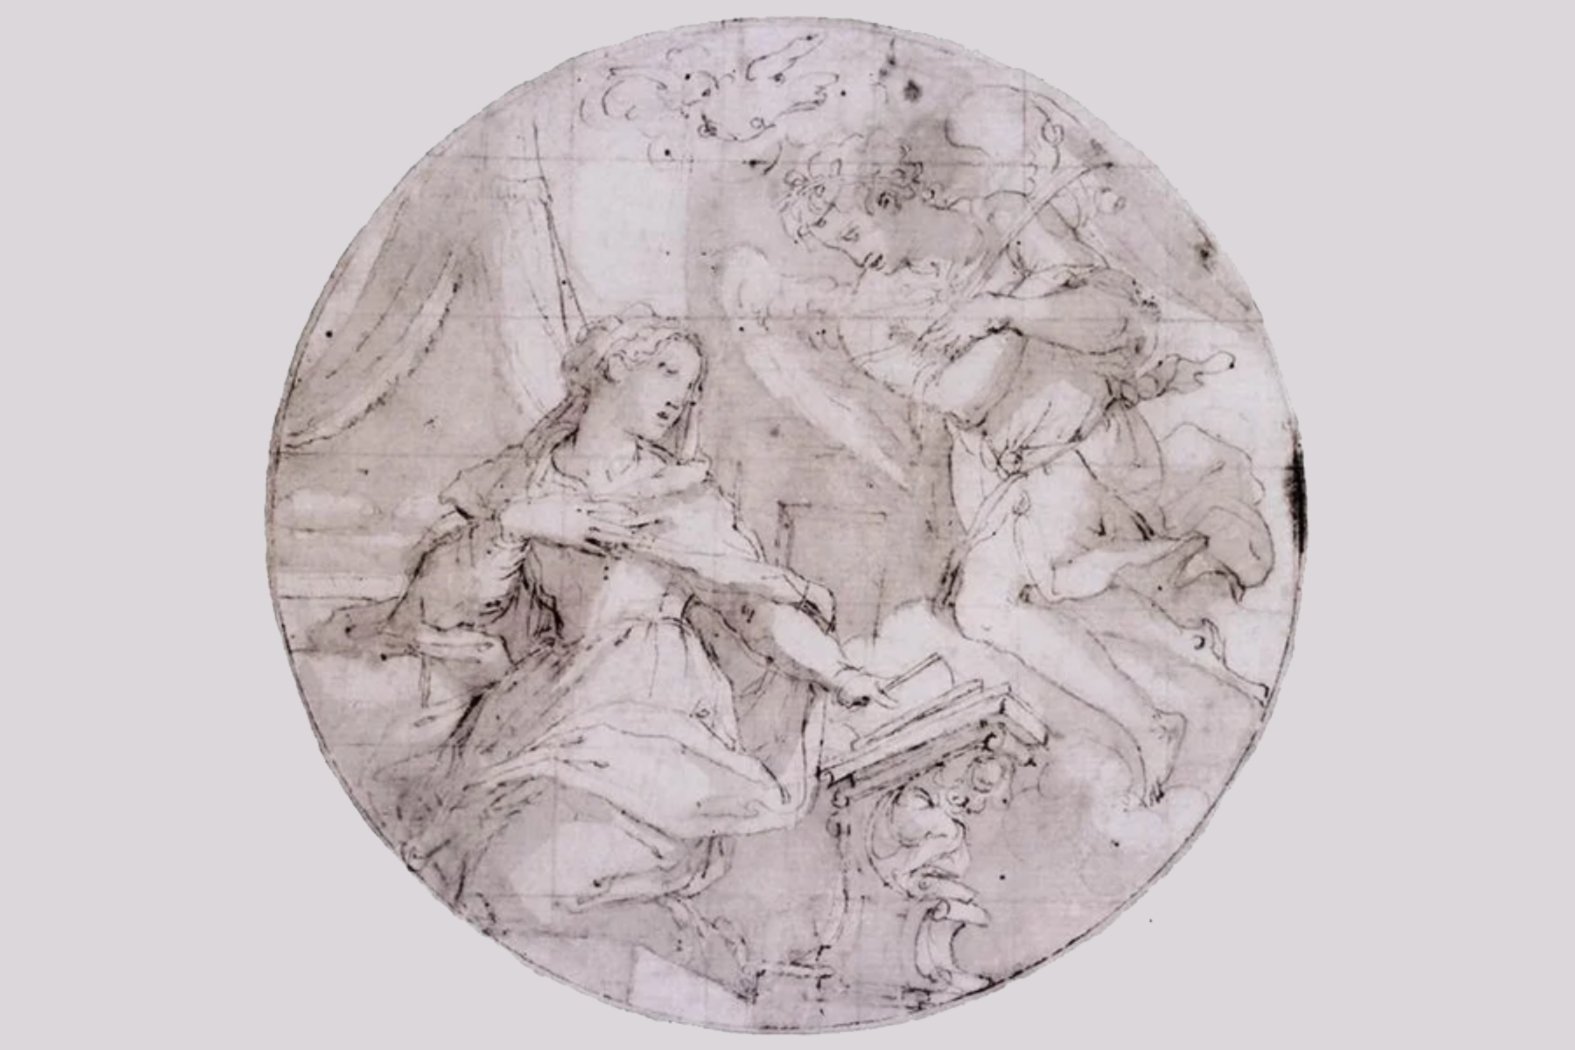 L'Annonciation, esquisse et étude, 1570 - 1571, Giorgio Vasari